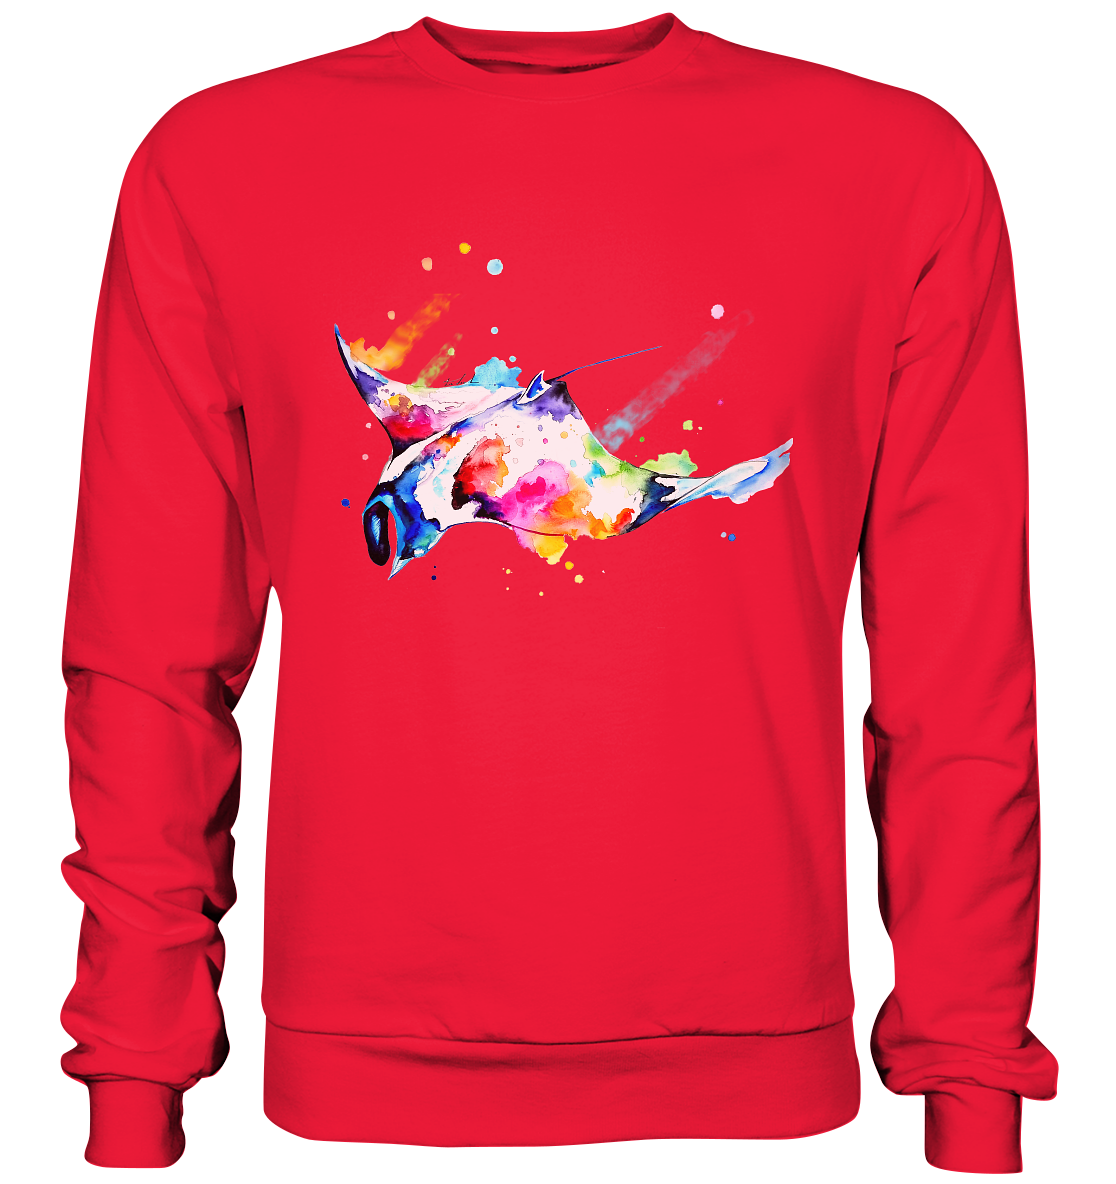 Bunter Rochen - Premium Sweatshirt